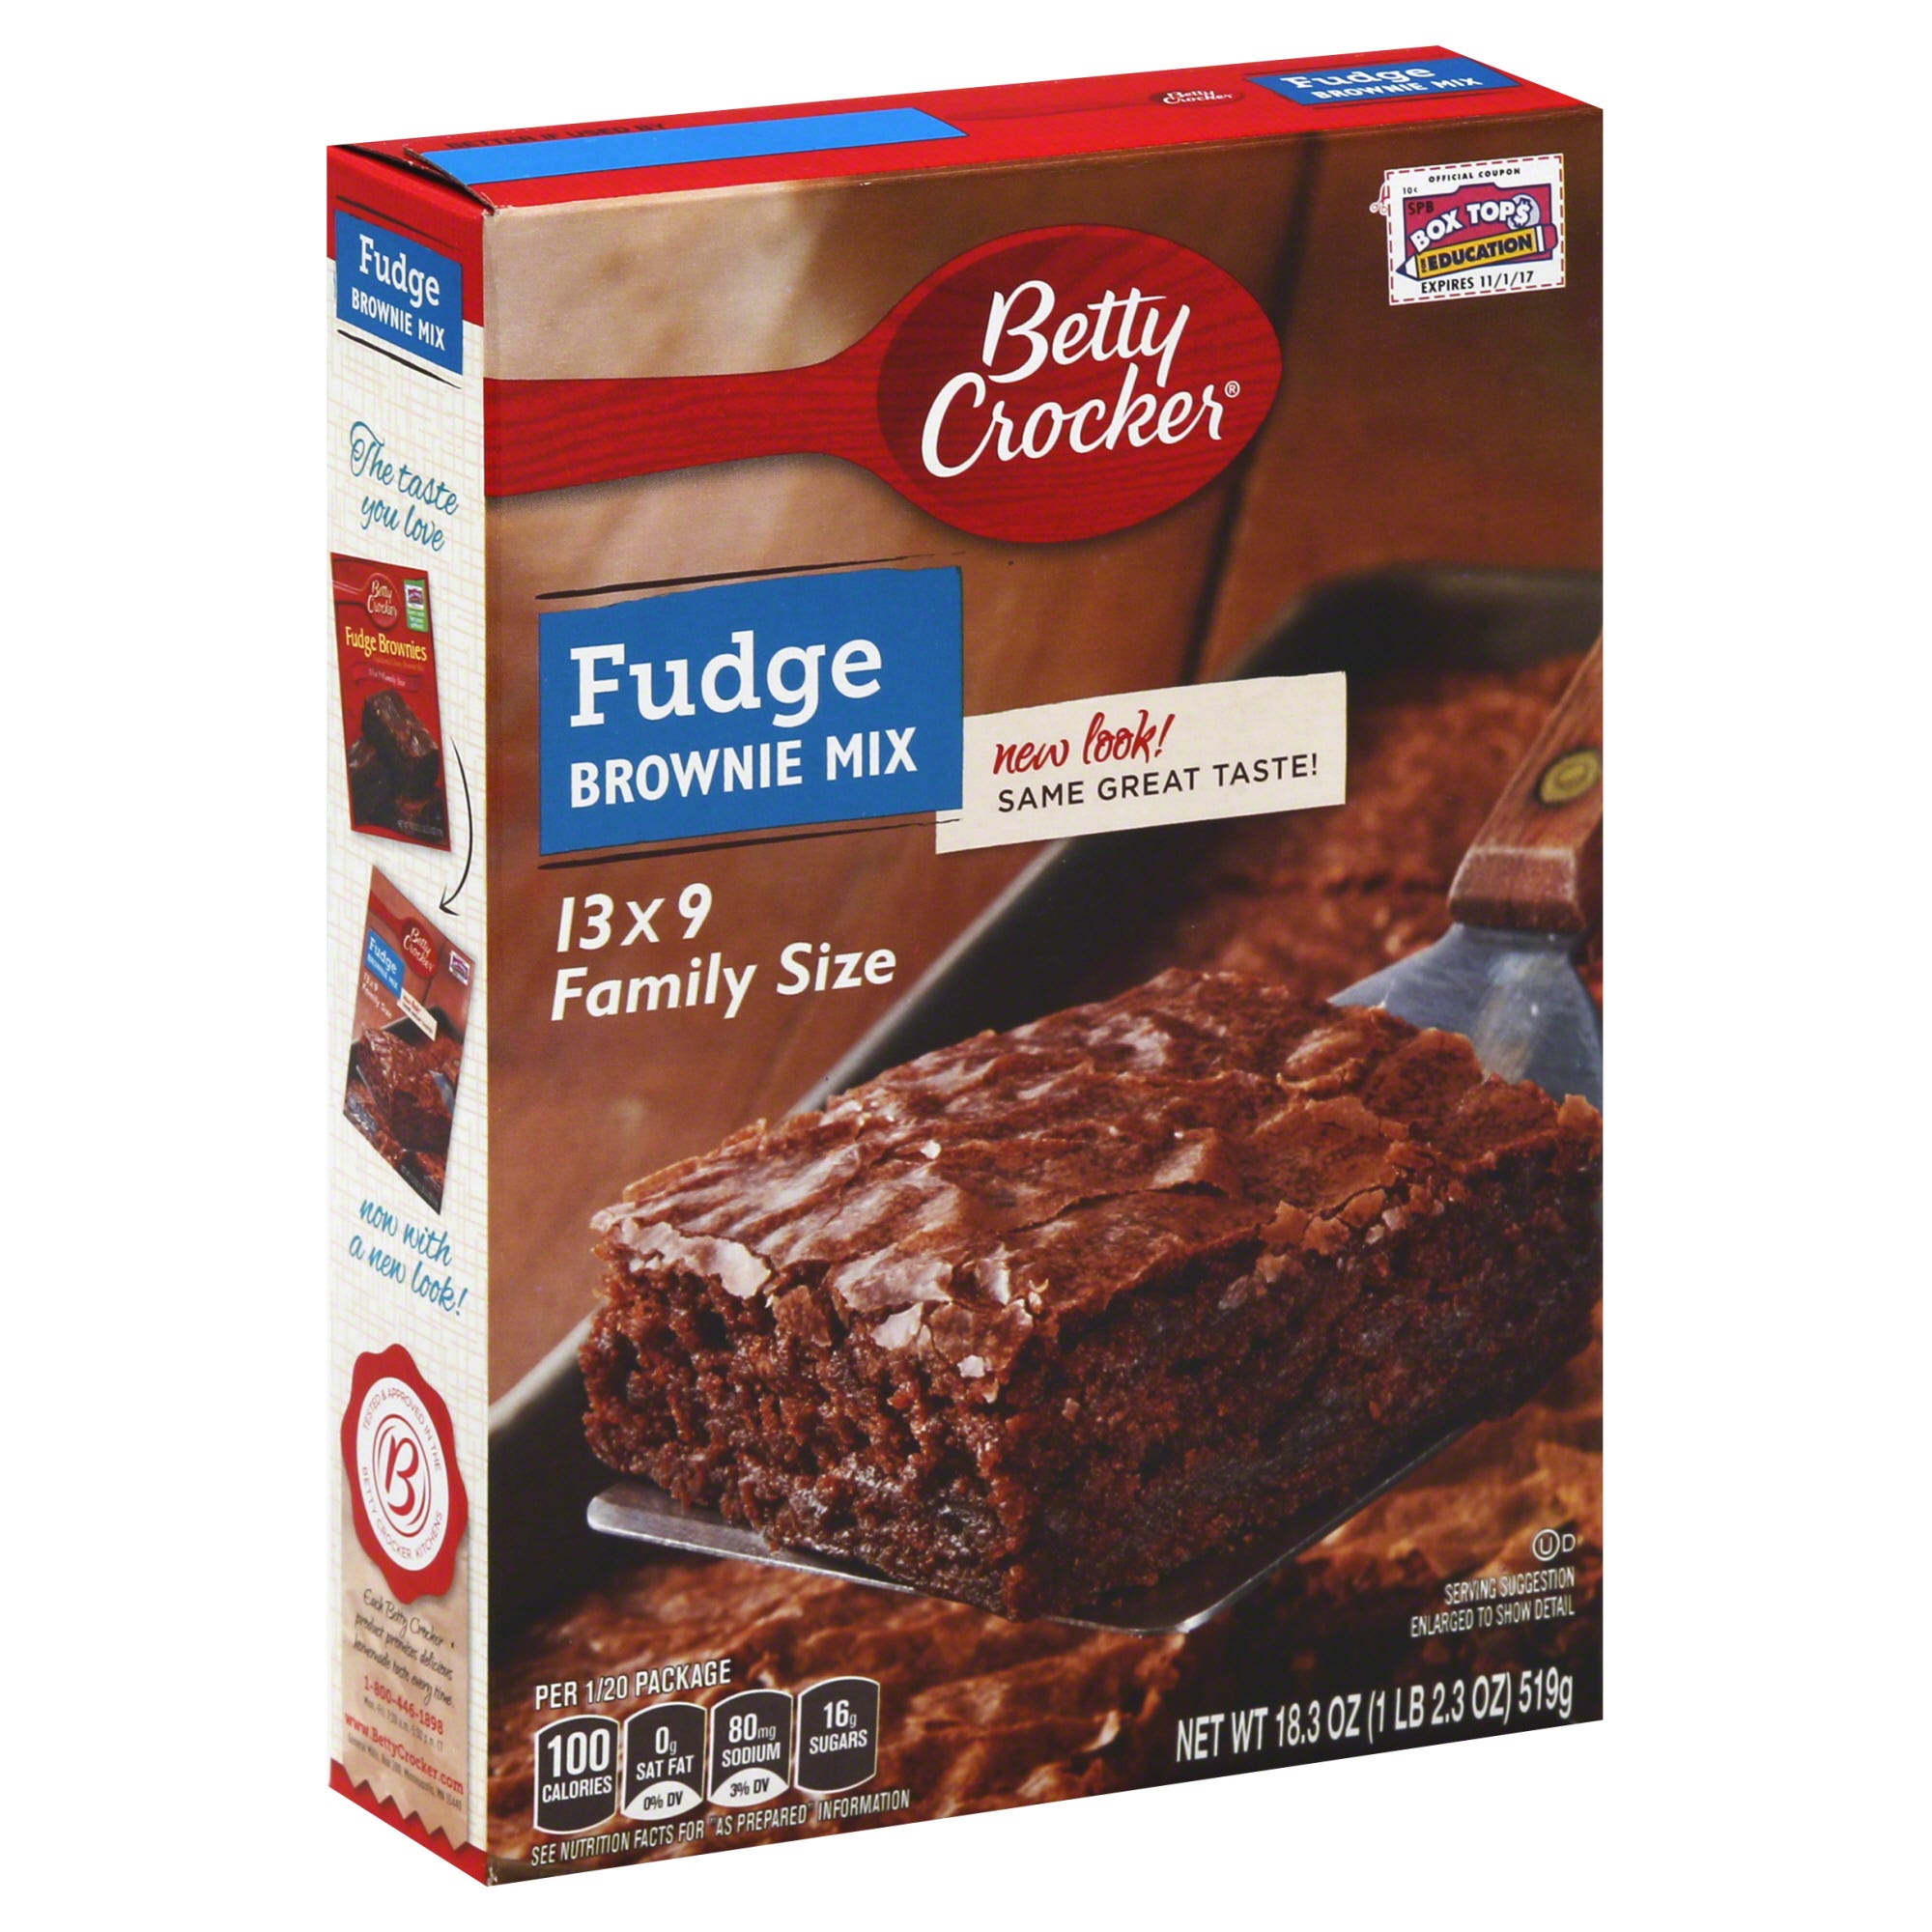 Betty Crocker Fudge Brownie Mix, 13 x 9 Family Size - 18.3 oz